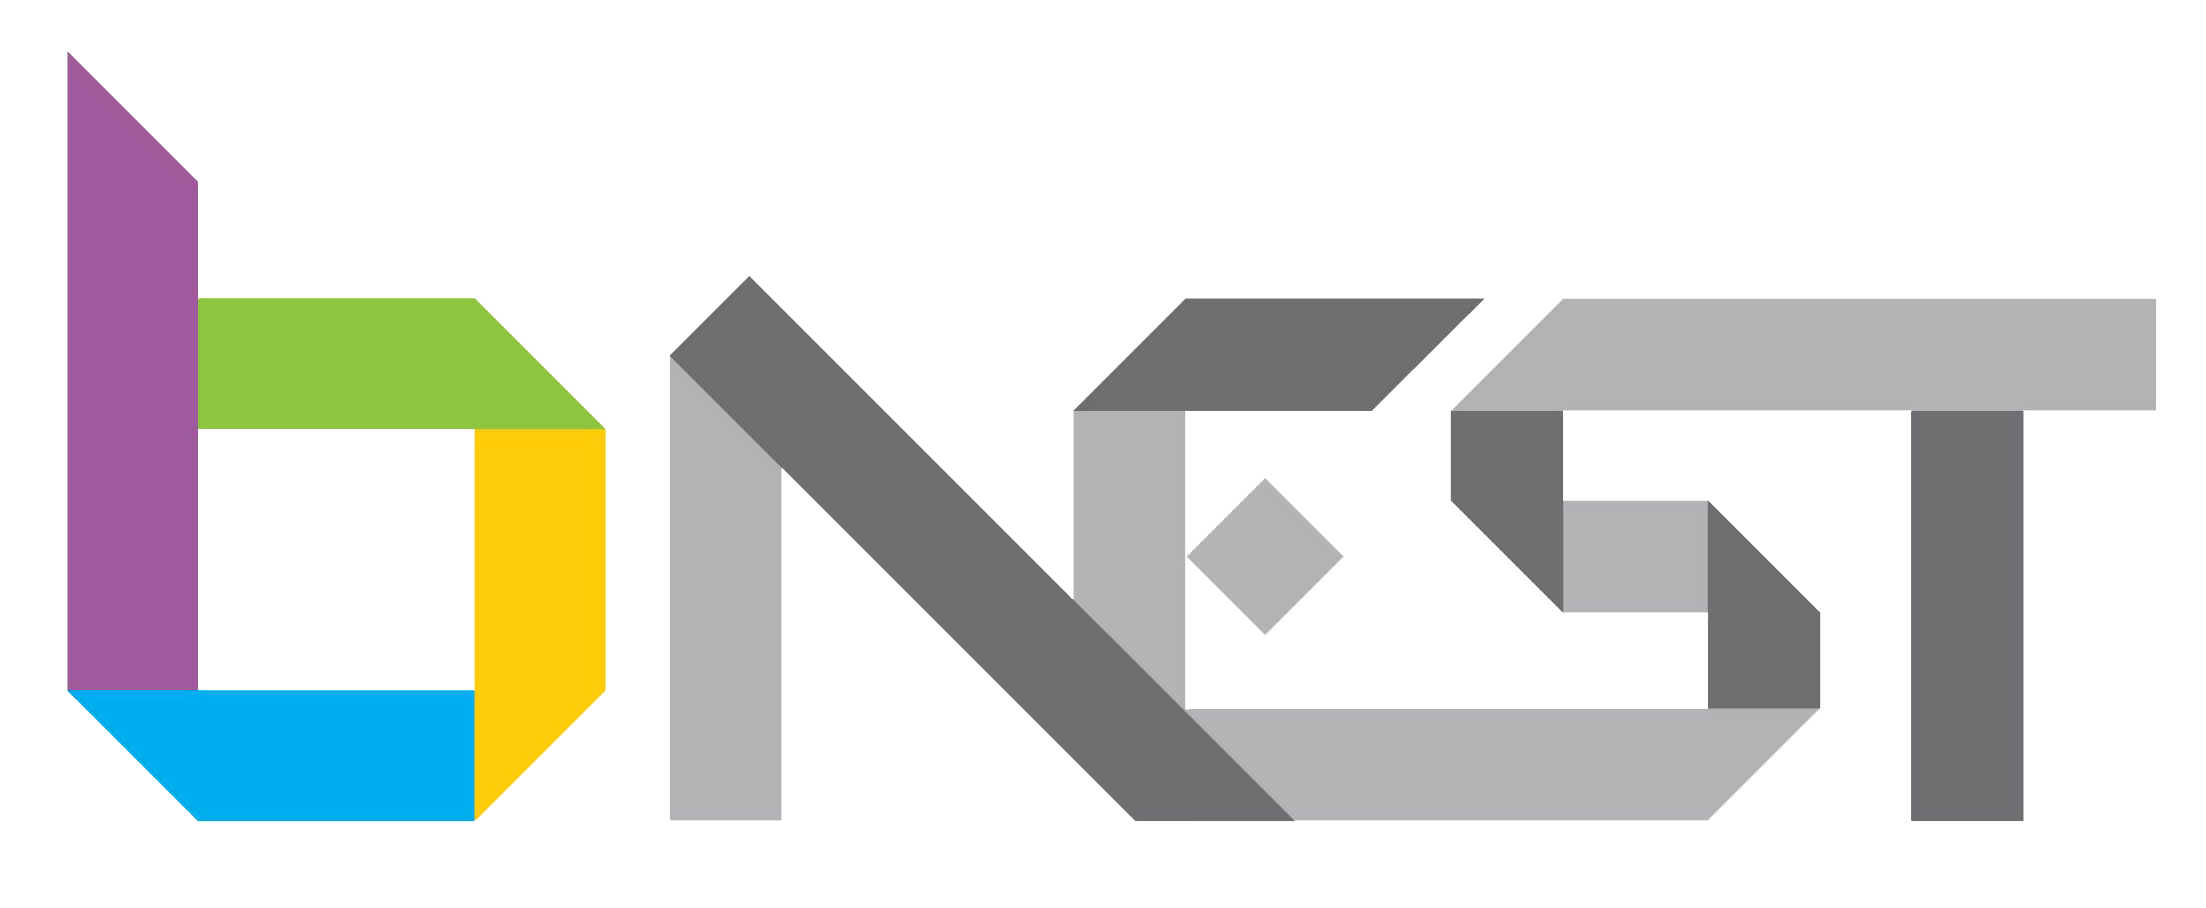 Bnest logo final